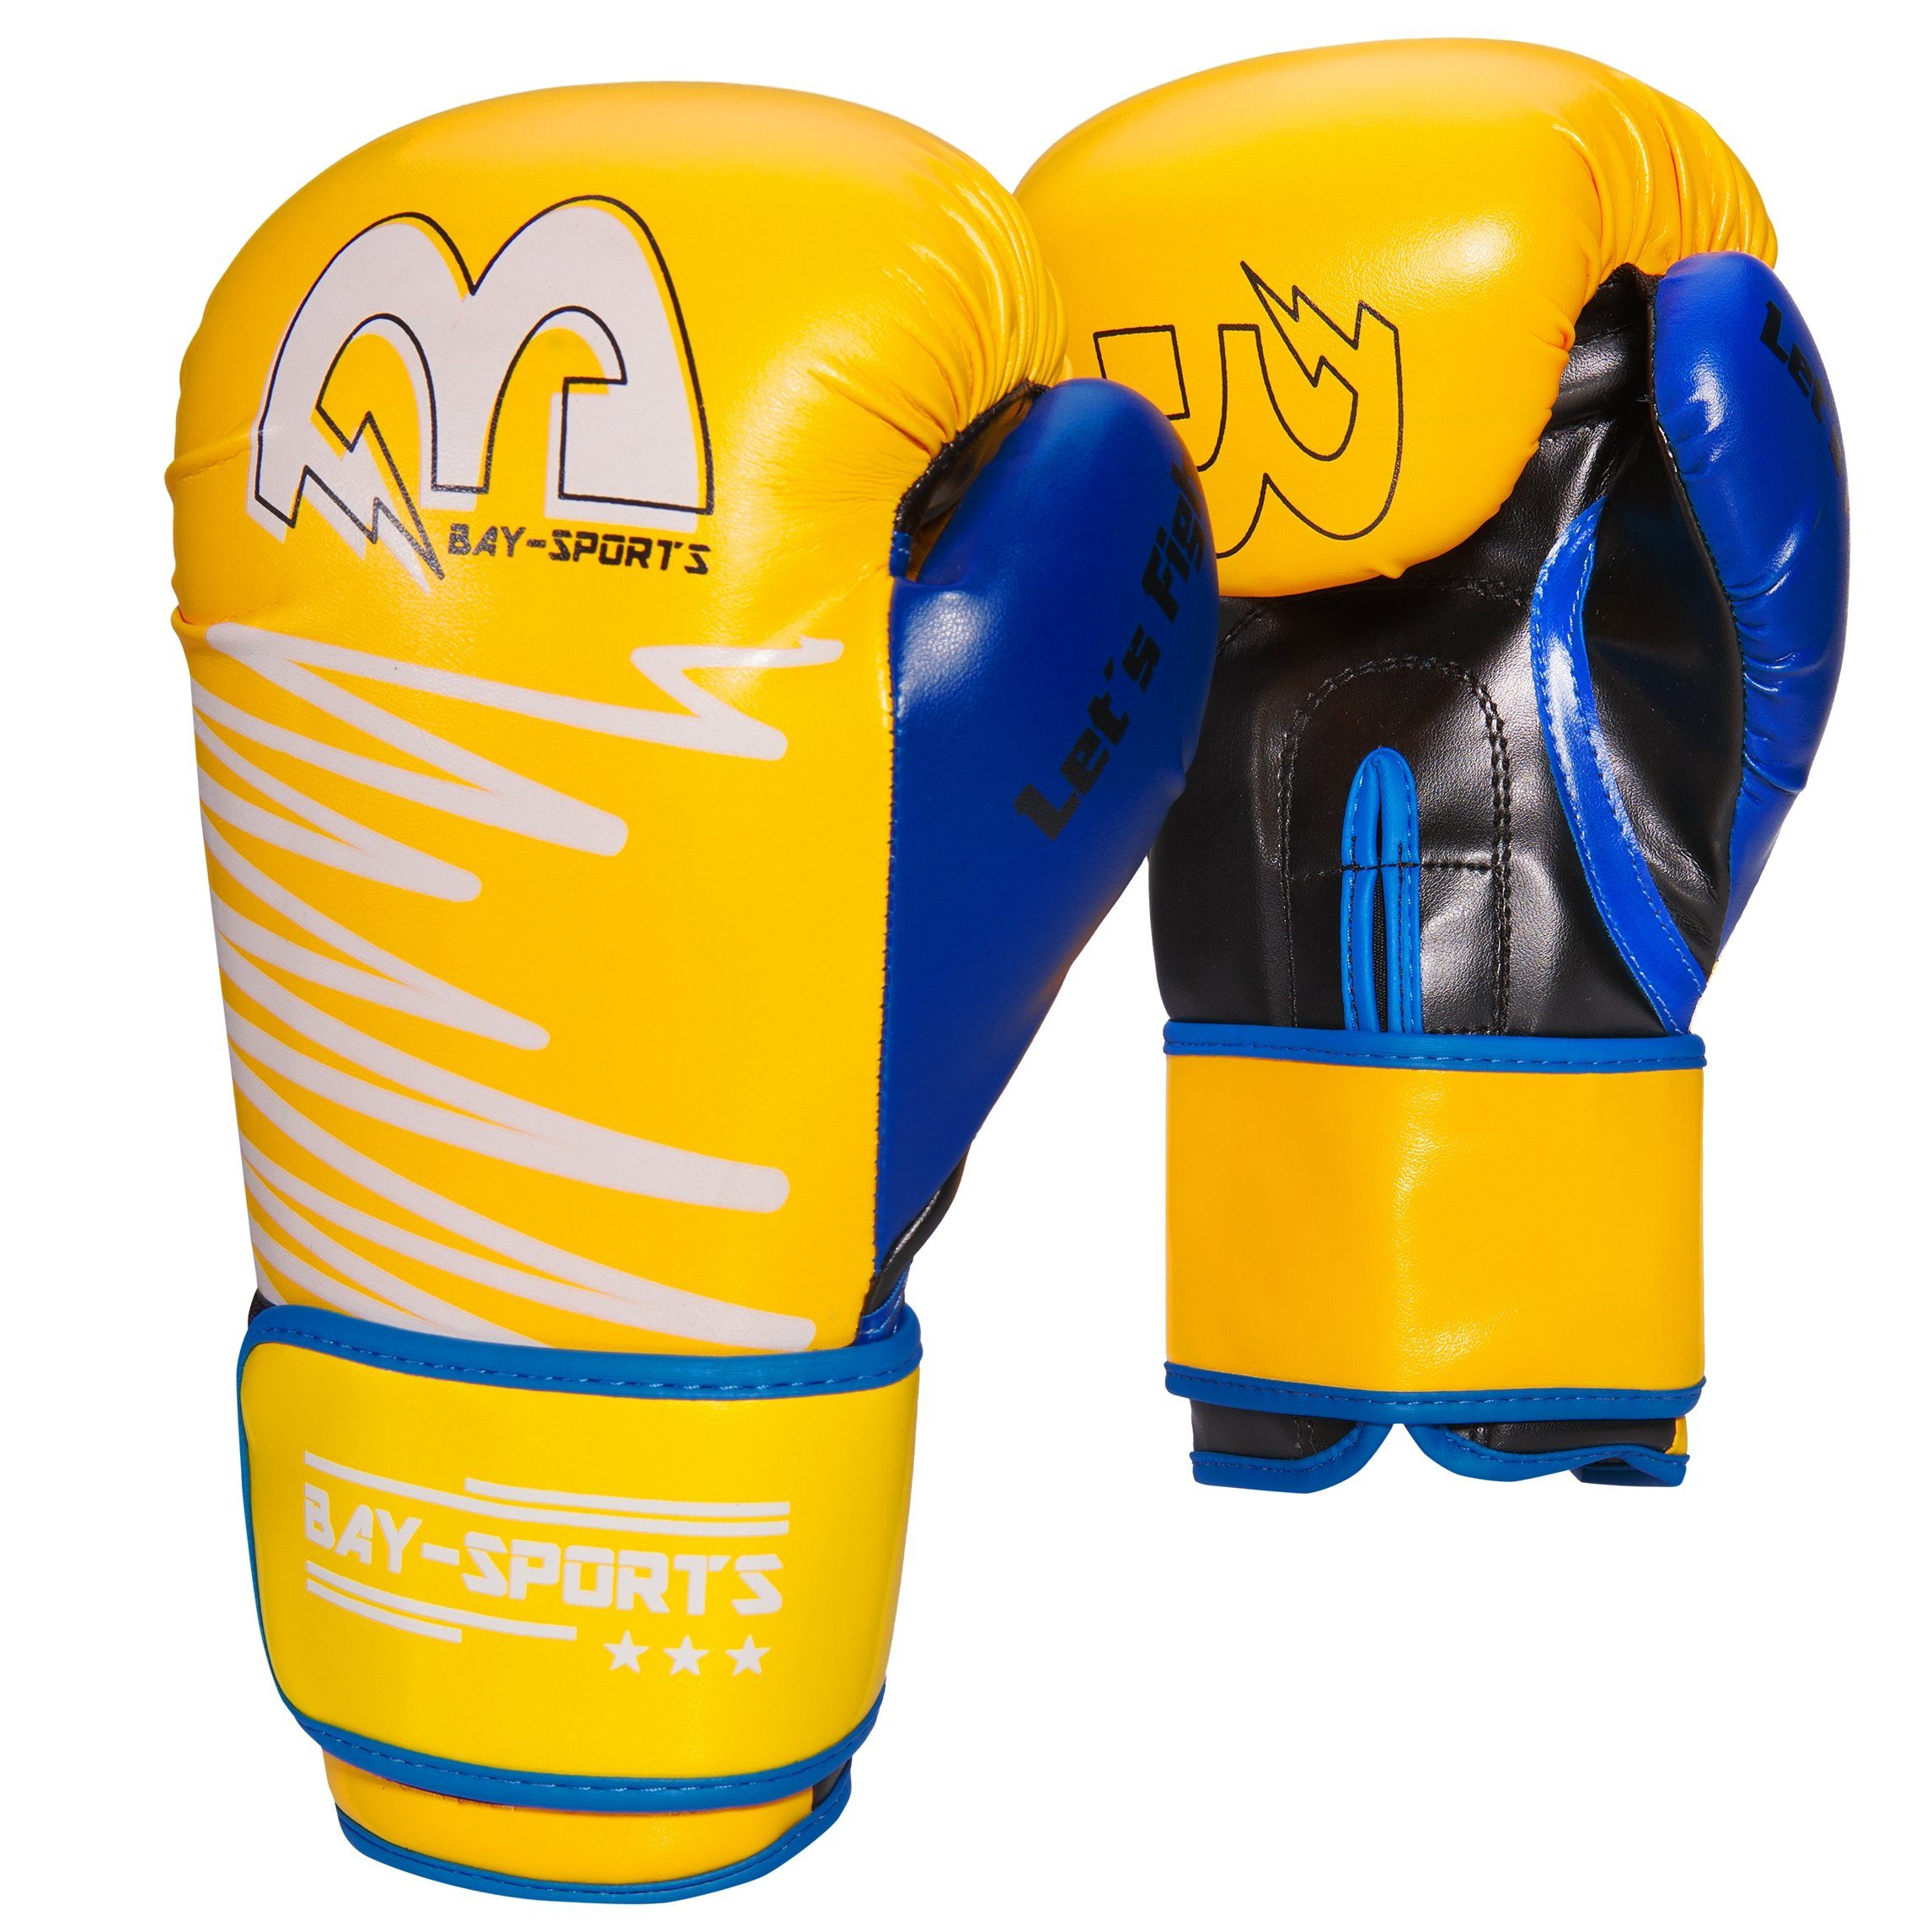 [Im Angebot zu einem supergünstigen Preis] BAY-Sports Boxhandschuhe Boxen Box-Handschuhe Kickboxen gelb Yellow neon